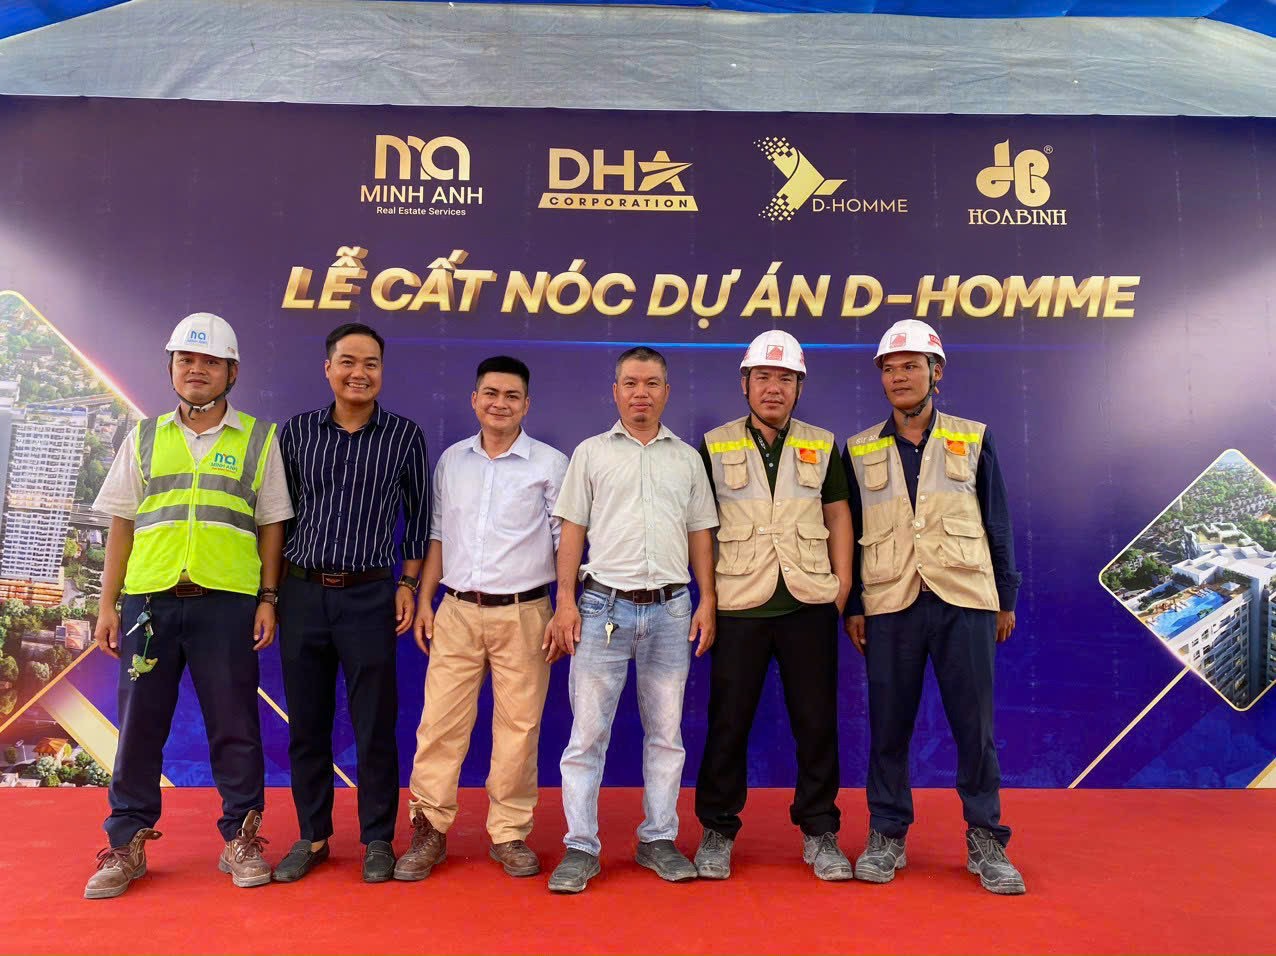 CONINCO – Thăng Long tham dự lễ cất nóc Dự án Khu chung cư kết hợp thương mại dịch vụ D-Homme